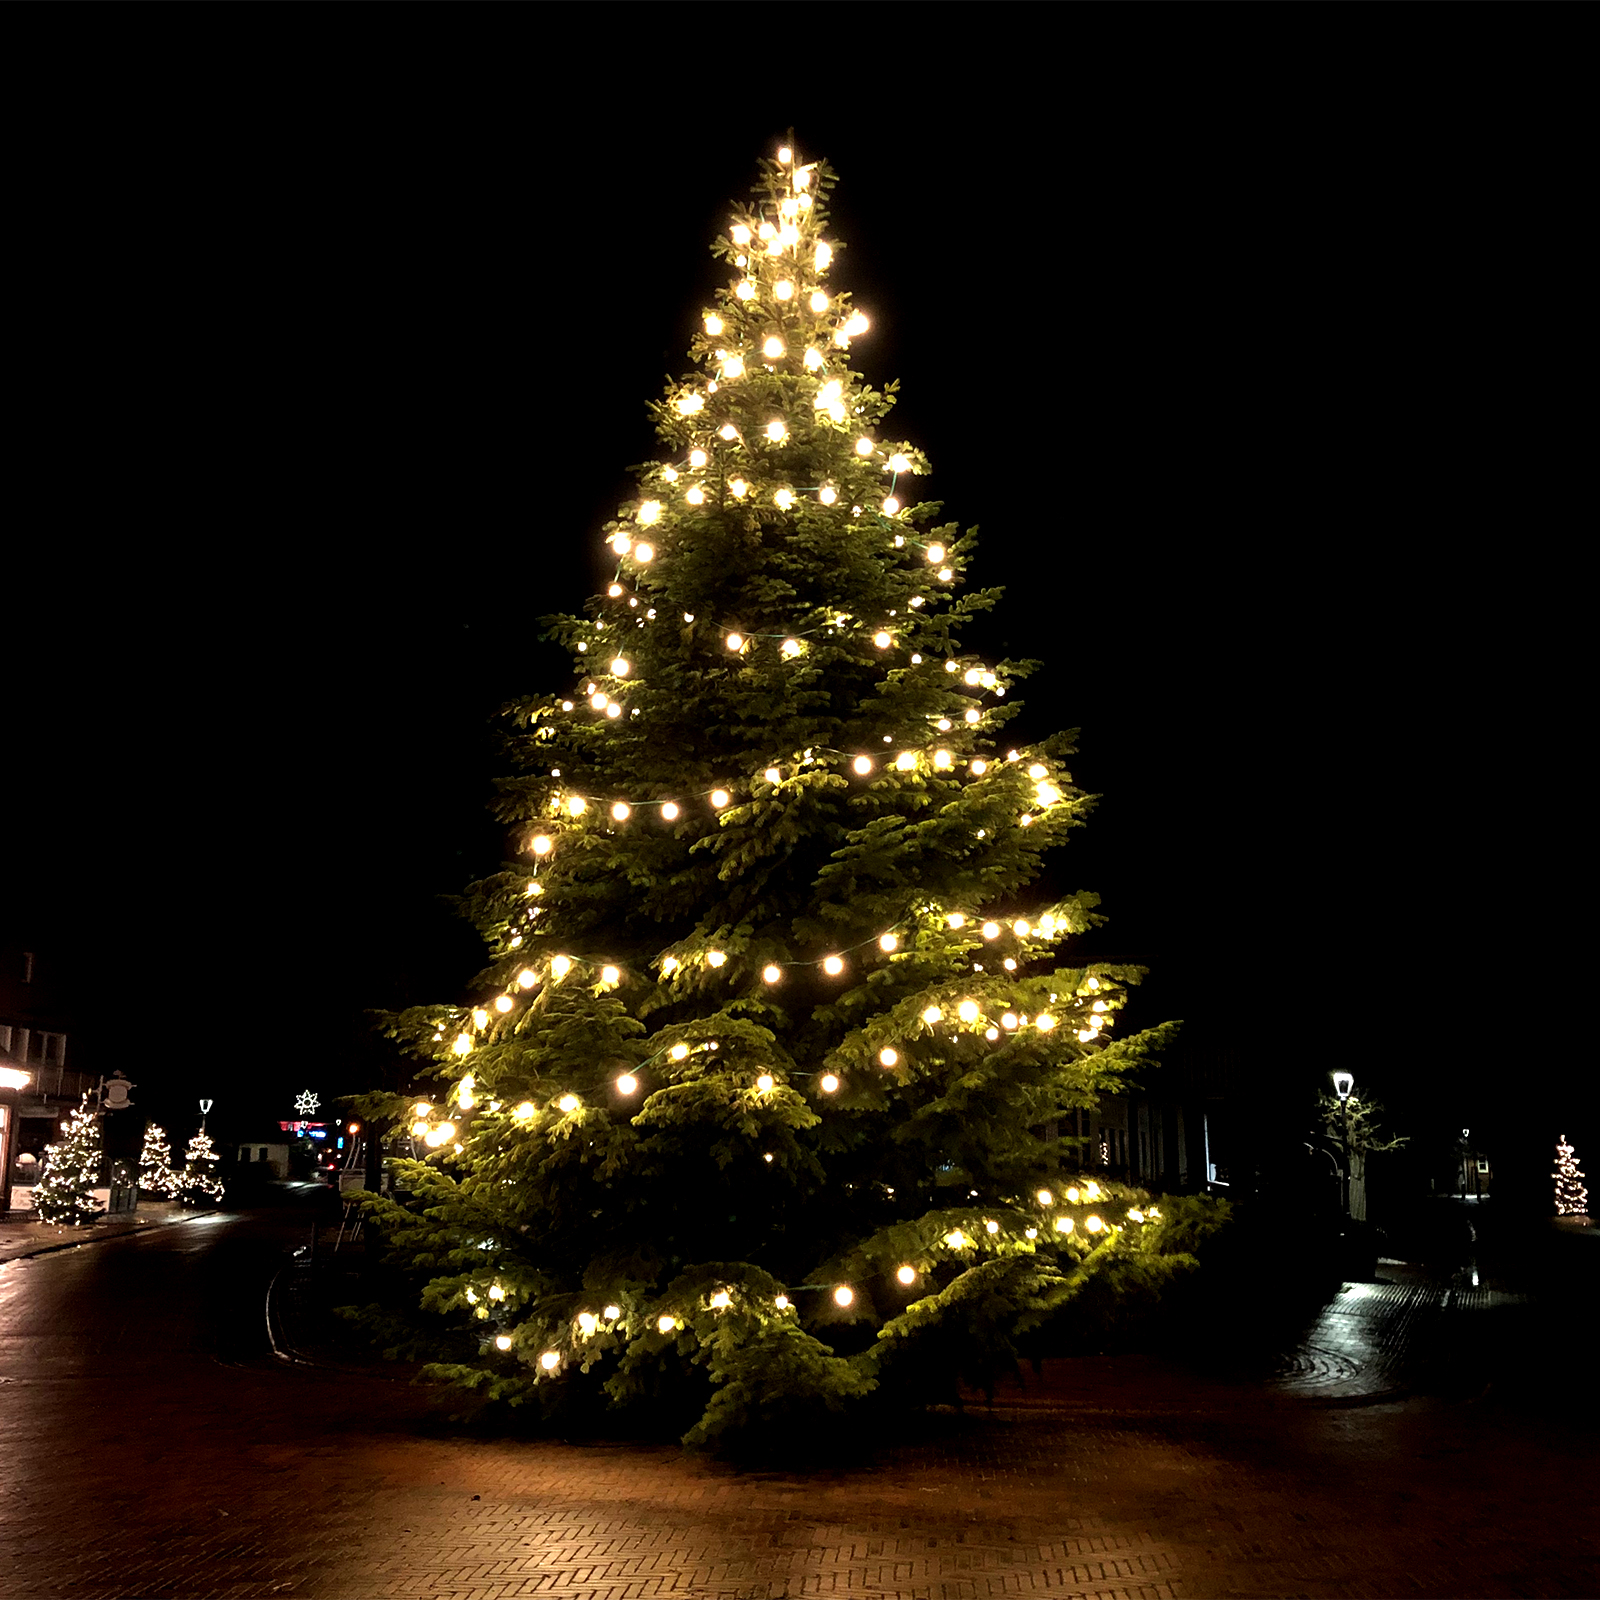 2019-11-29-Dorf-Weihnachtsbaum-©tzspo-8b.jpg